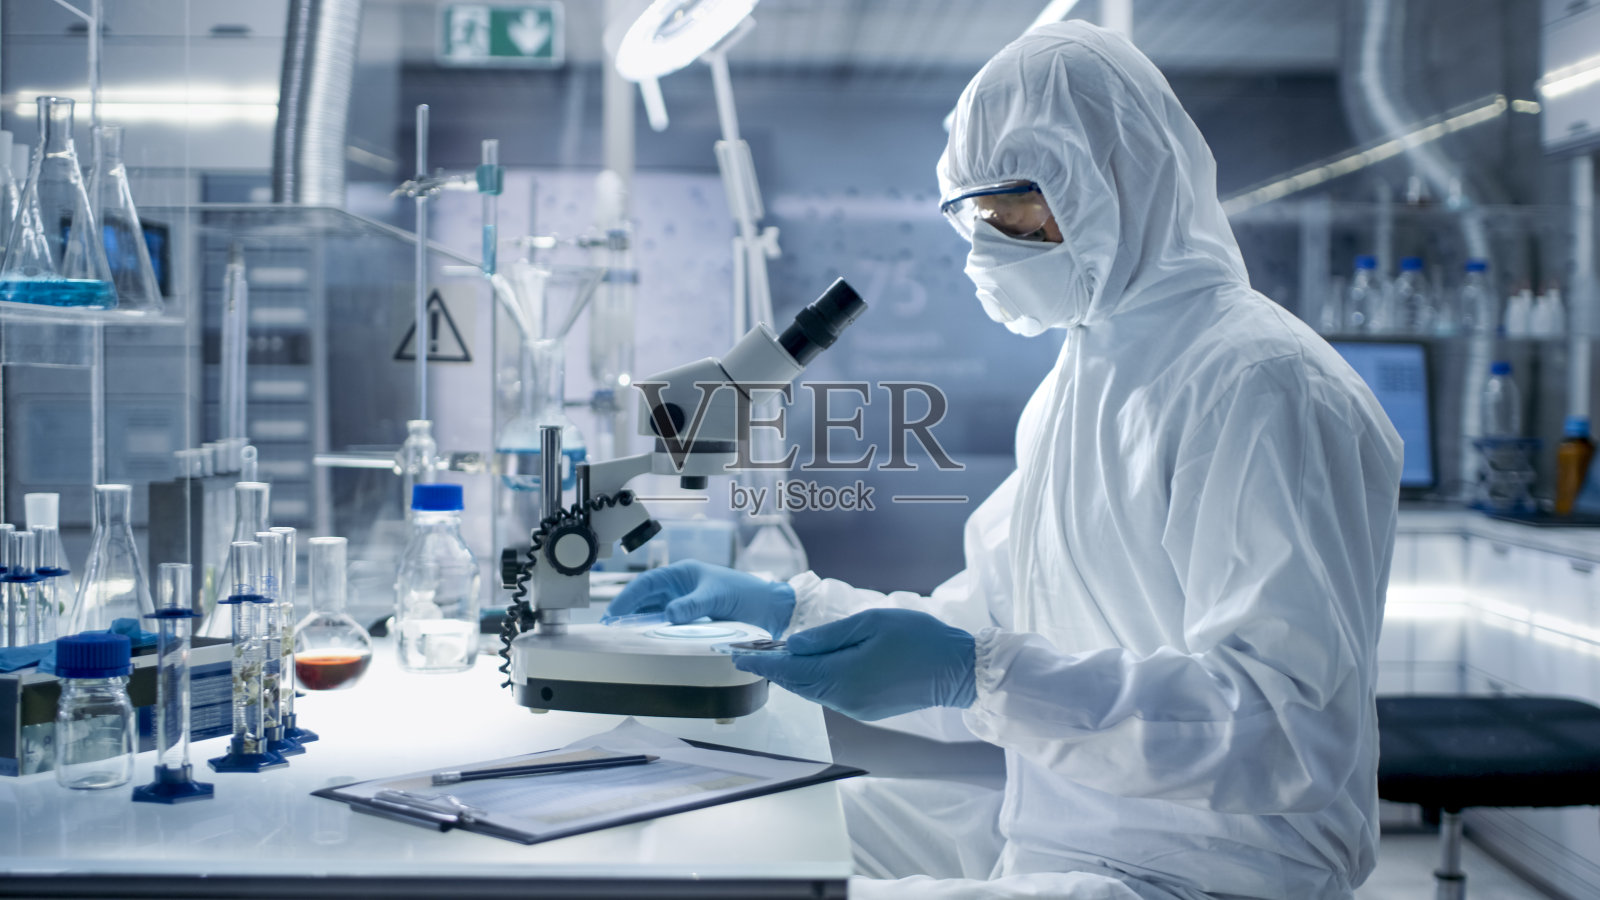 在一个安全的高水平实验室里，科学家们穿着工作服进行一项研究。生物学家用钳子调整培养皿中的样本，并在显微镜下检查它们。照片摄影图片